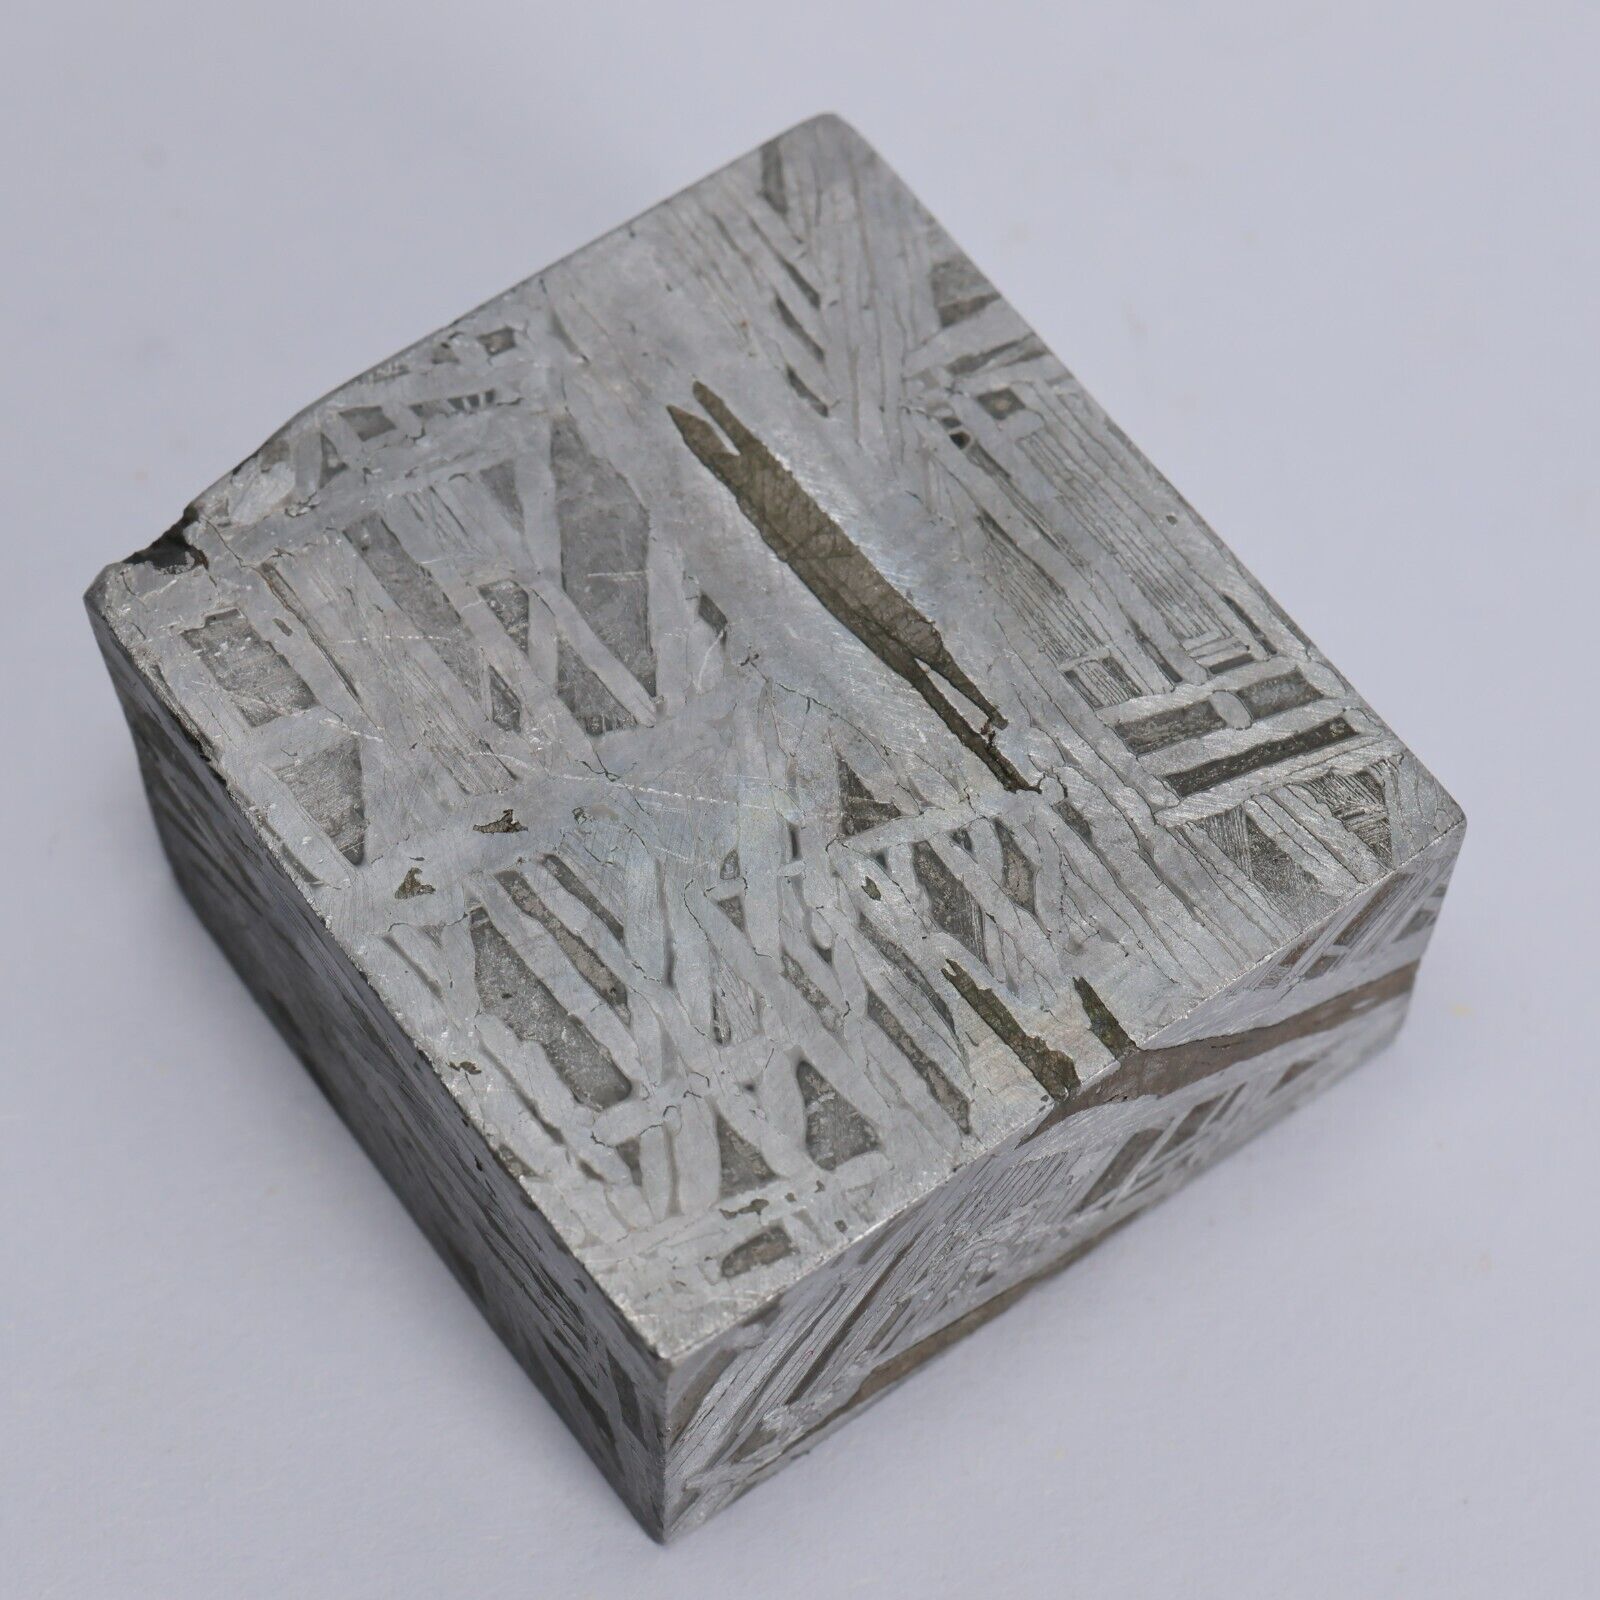 228g Muonionalusta meteorite cube R2035